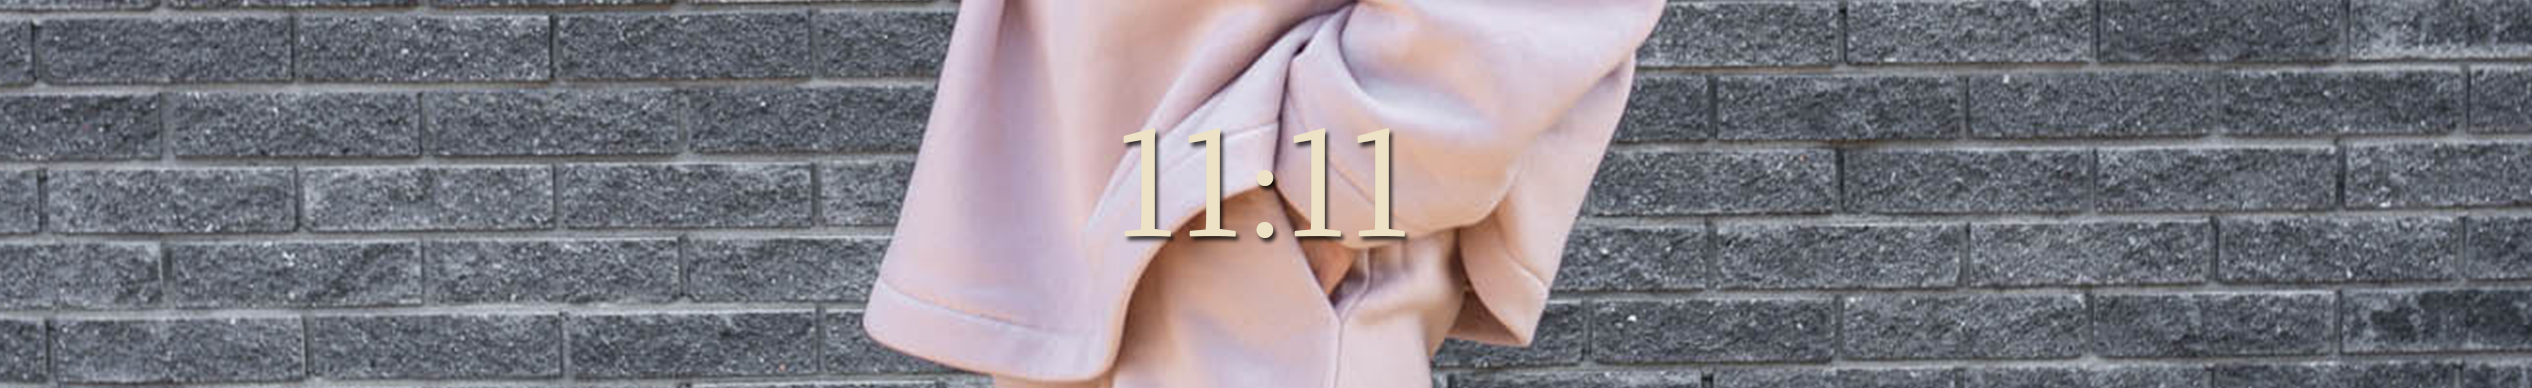 symbole i ich znaczenie 11:11